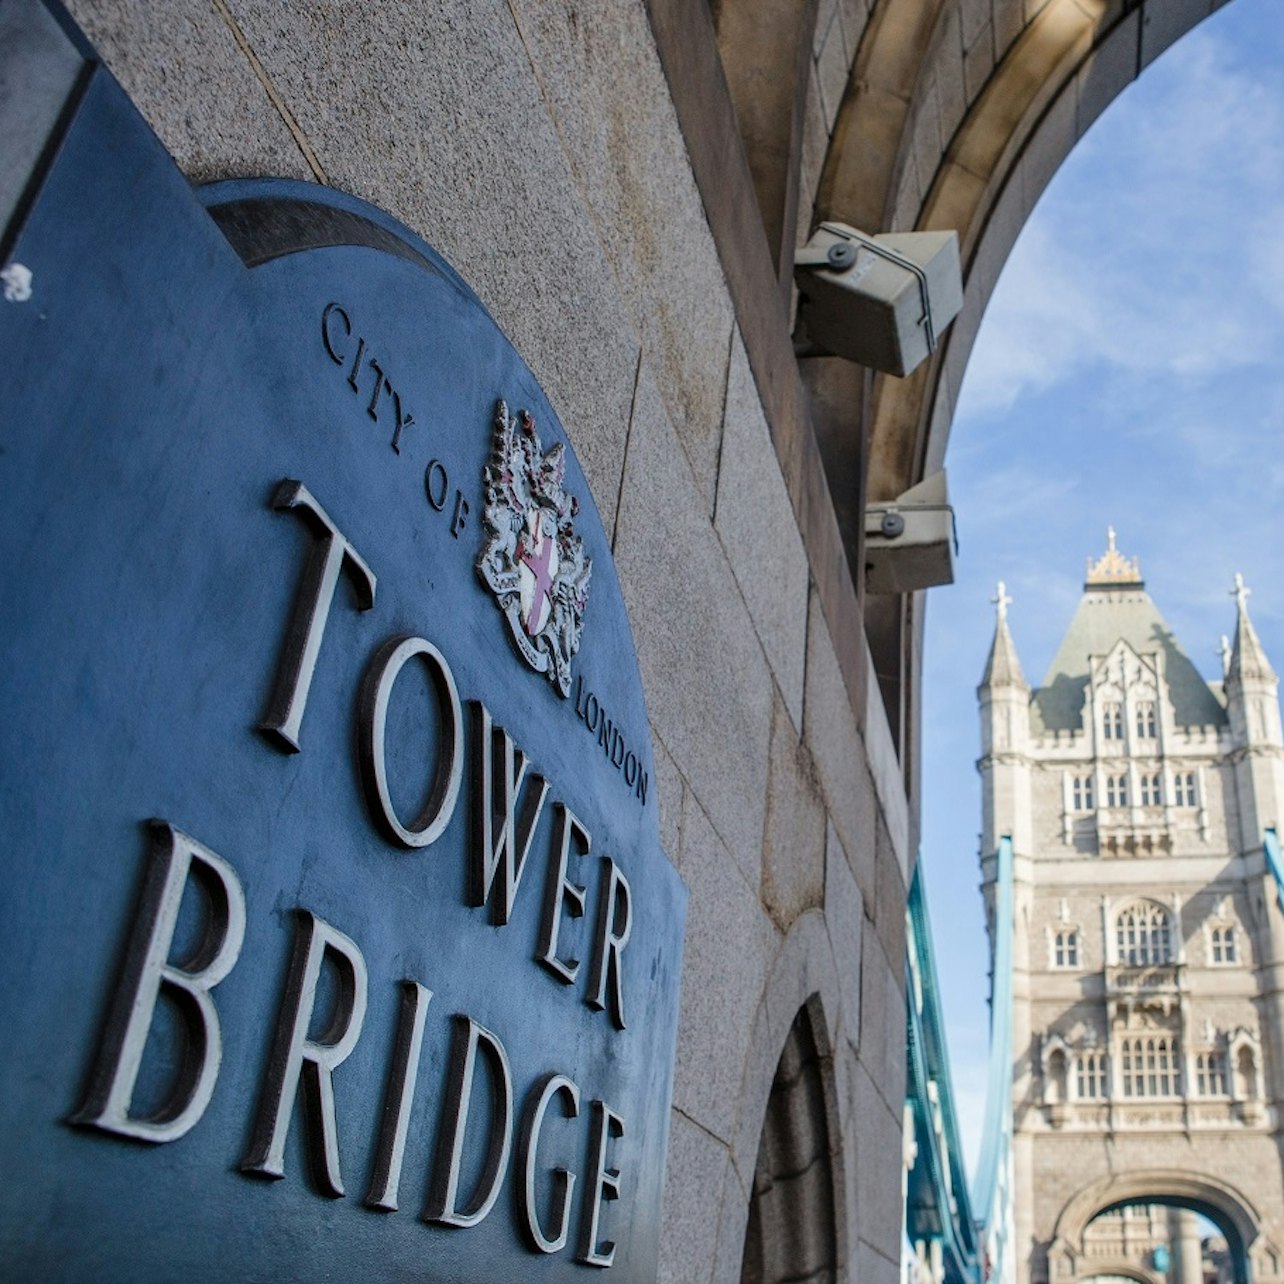 Tower Bridge - Acomodações em Londres